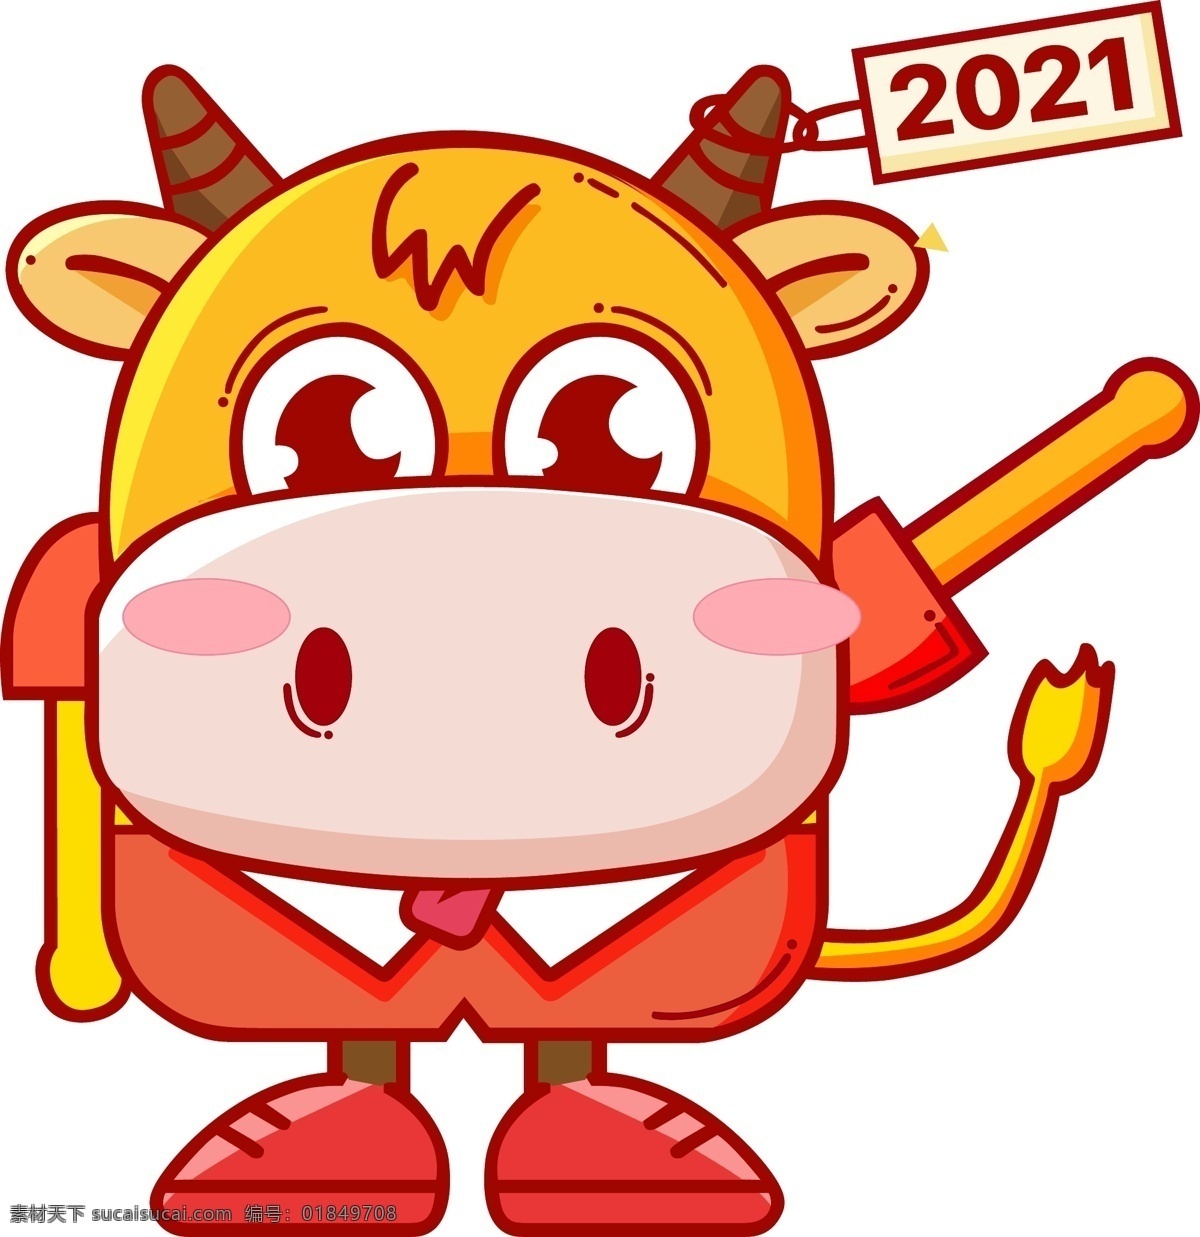 2020 卡通 牛 可爱牛 卡通牛 牛卡通 2021 牛年 矢量牛 卡通牛门贴 牛图标 福牛 2021牛 2021素材 文化艺术 节日庆祝